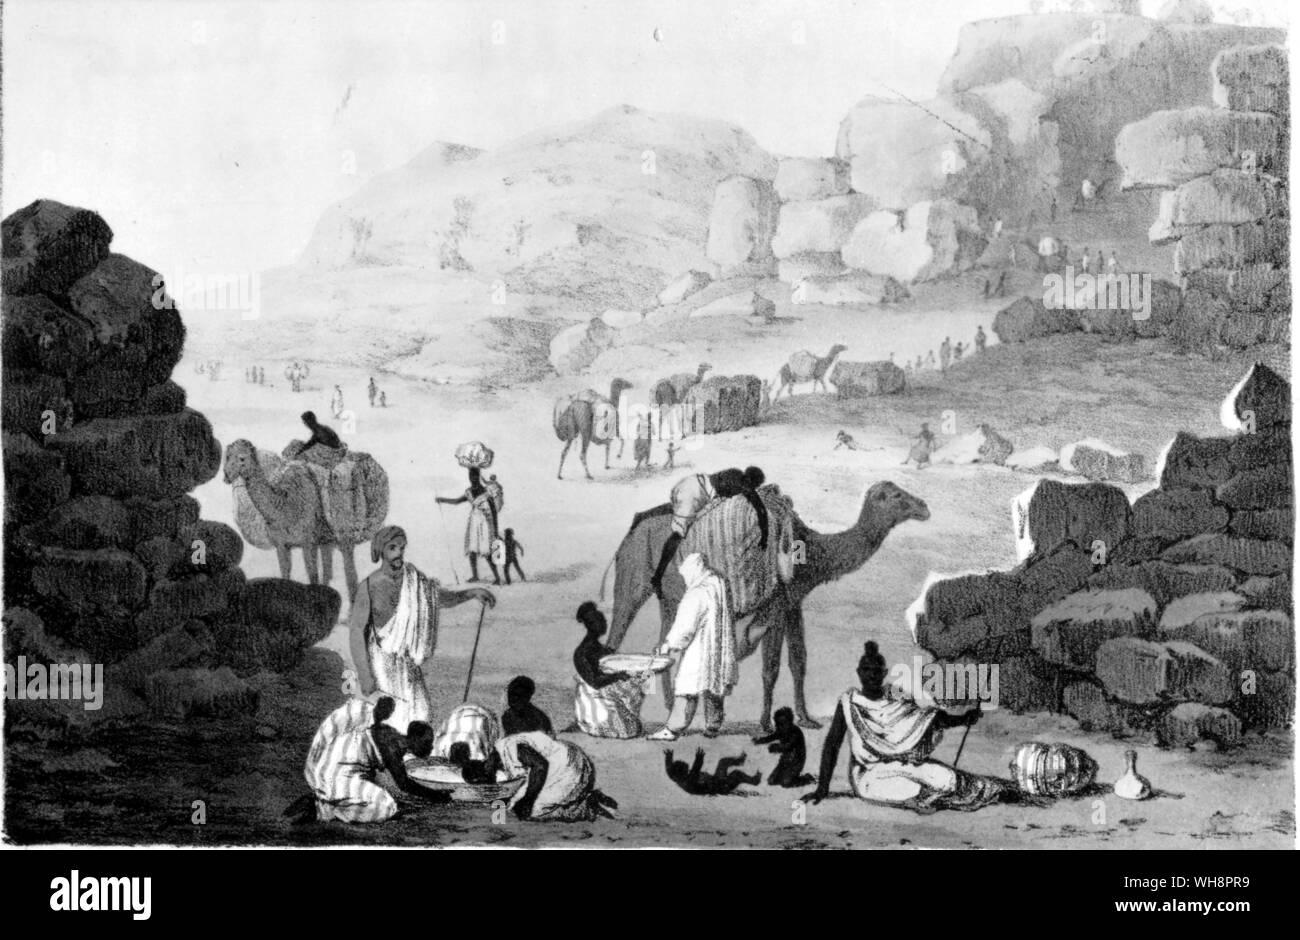 Une caravane d'esclaves. D'après un dessin de G. F. Lyon dans ses voyages en Afrique du Nord Banque D'Images